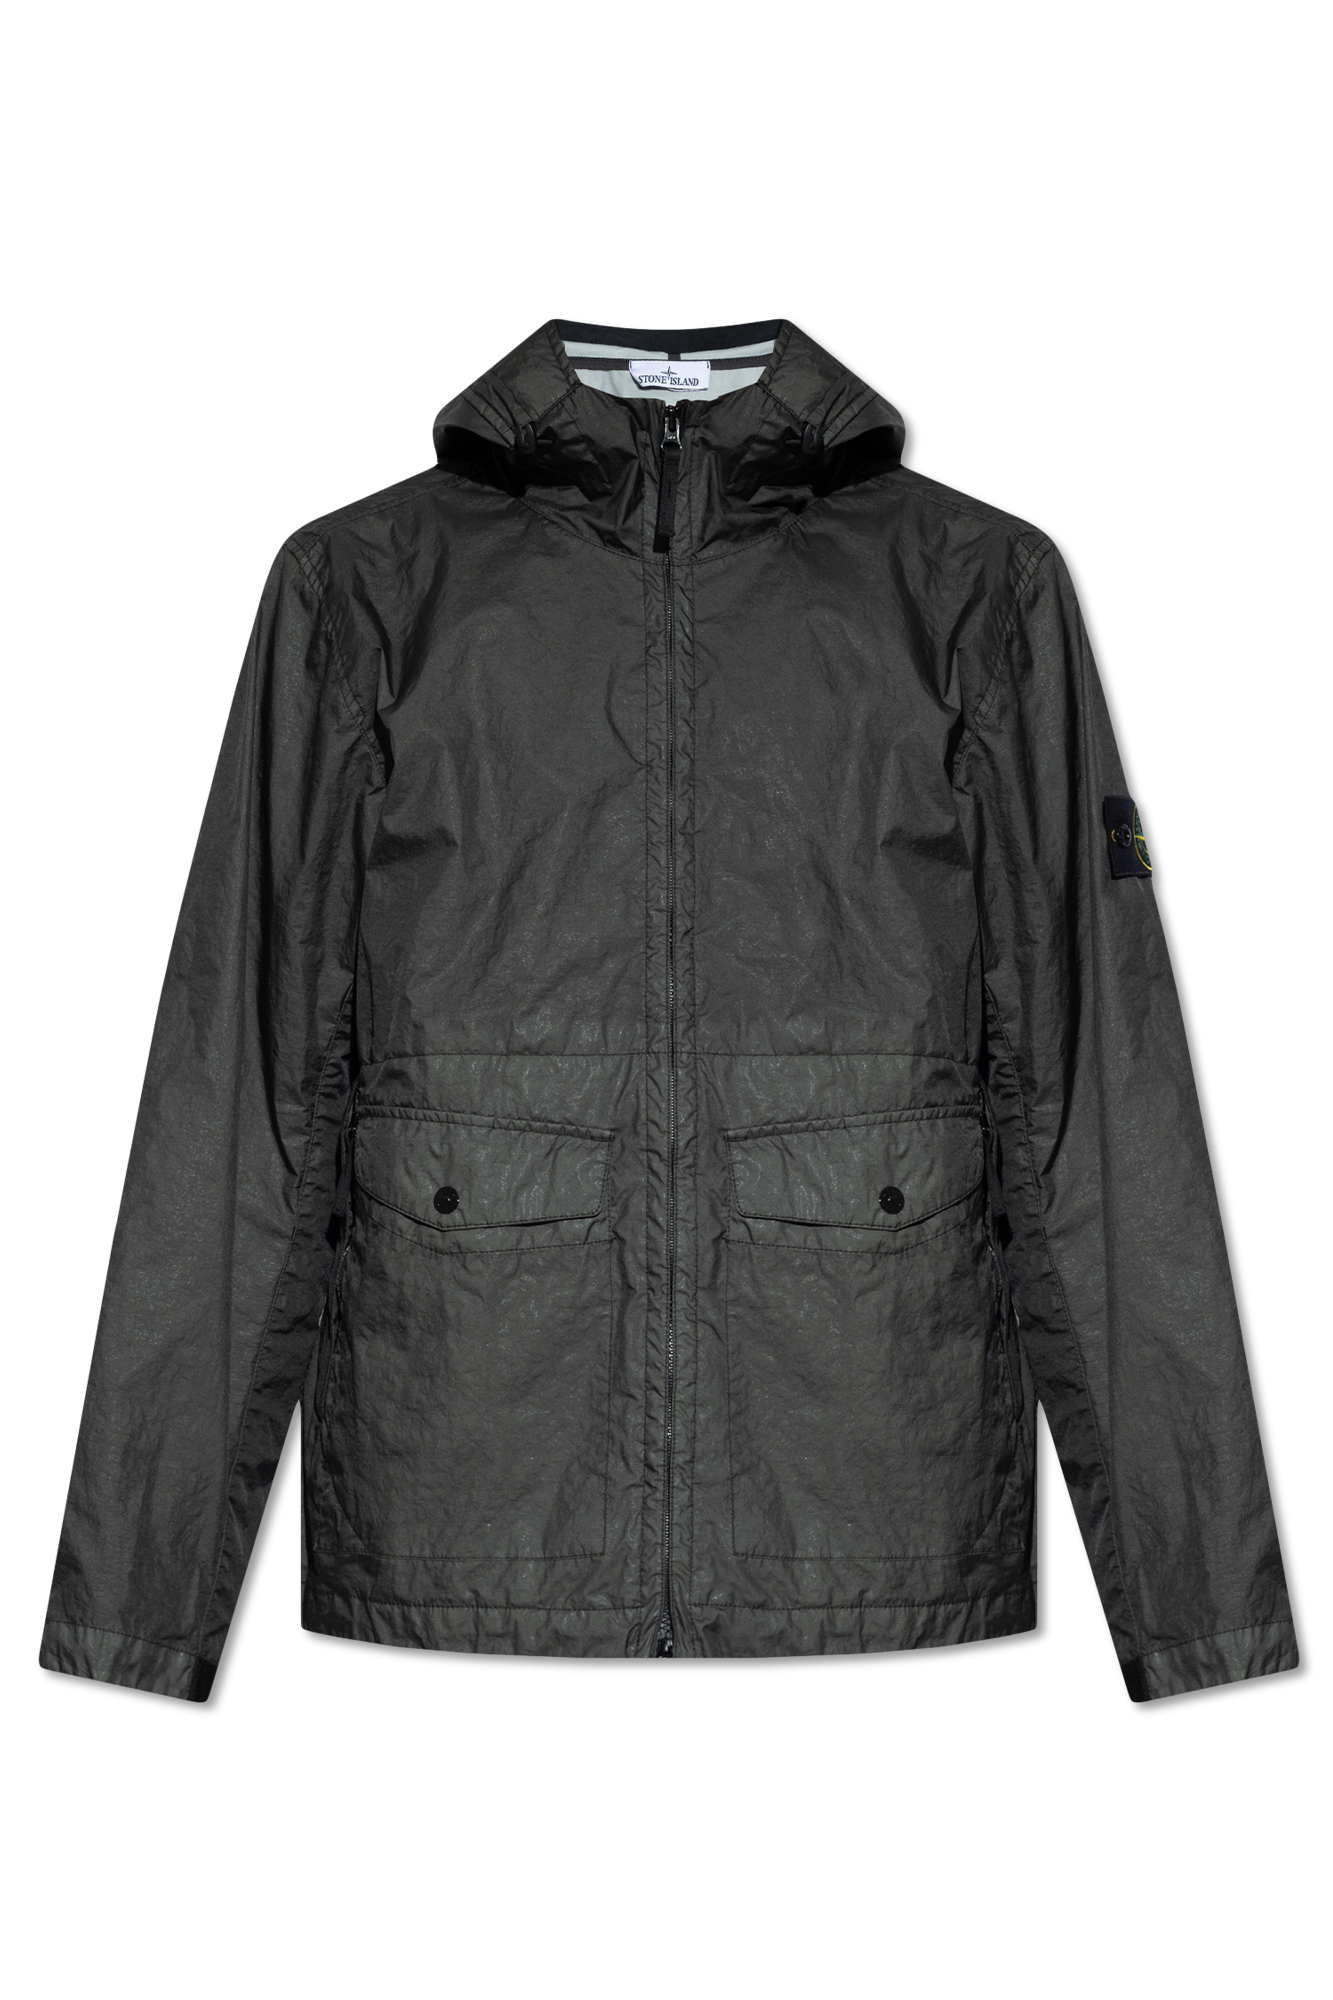 Stone Island Hooded jacket | Men's Clothing | Vitkac